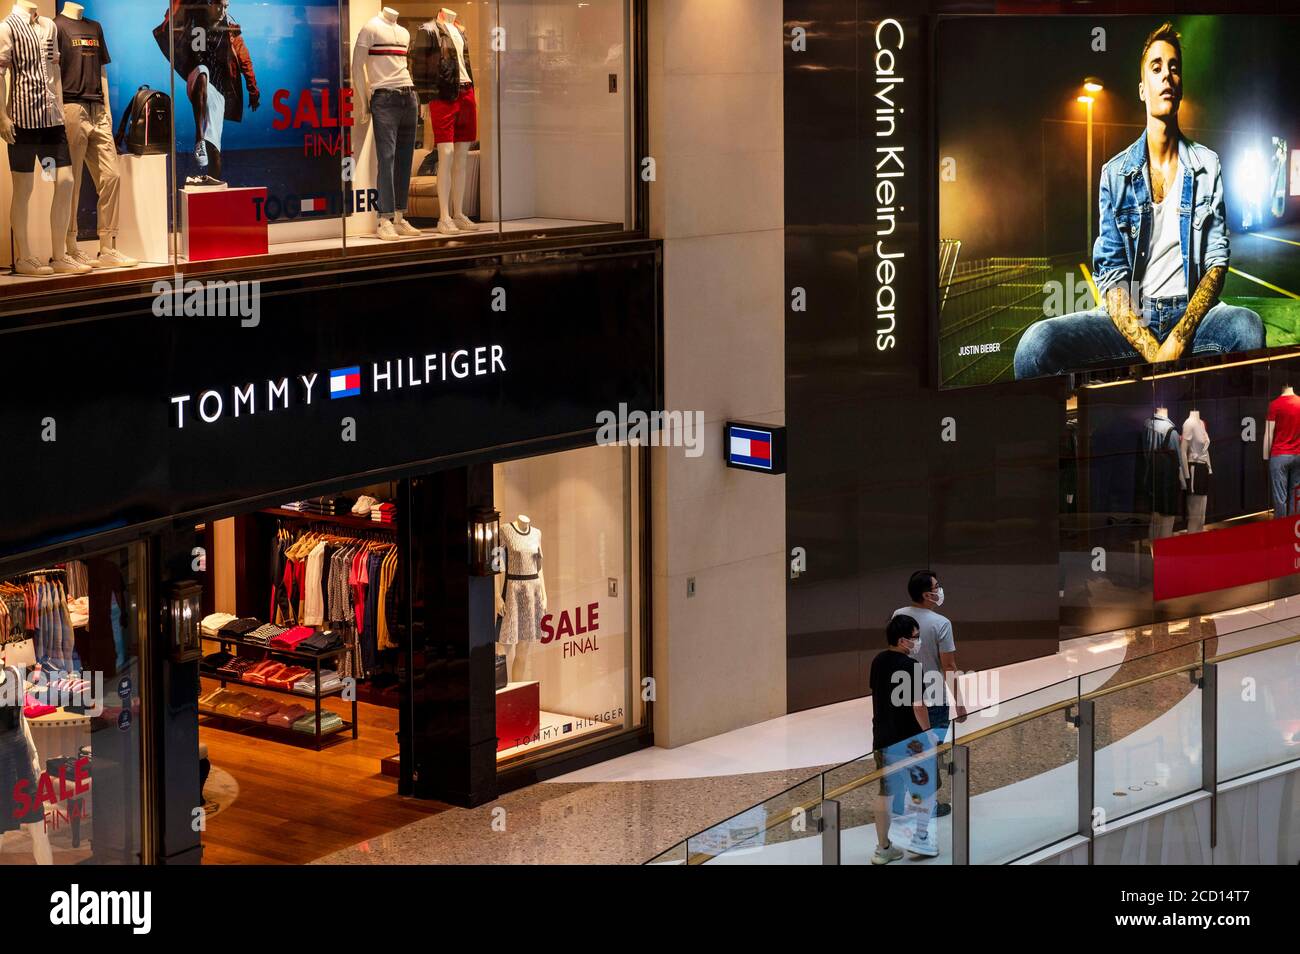 Tommy Hilfiger, Malad - Unisex Wear - Infiniti Mall - Shopping